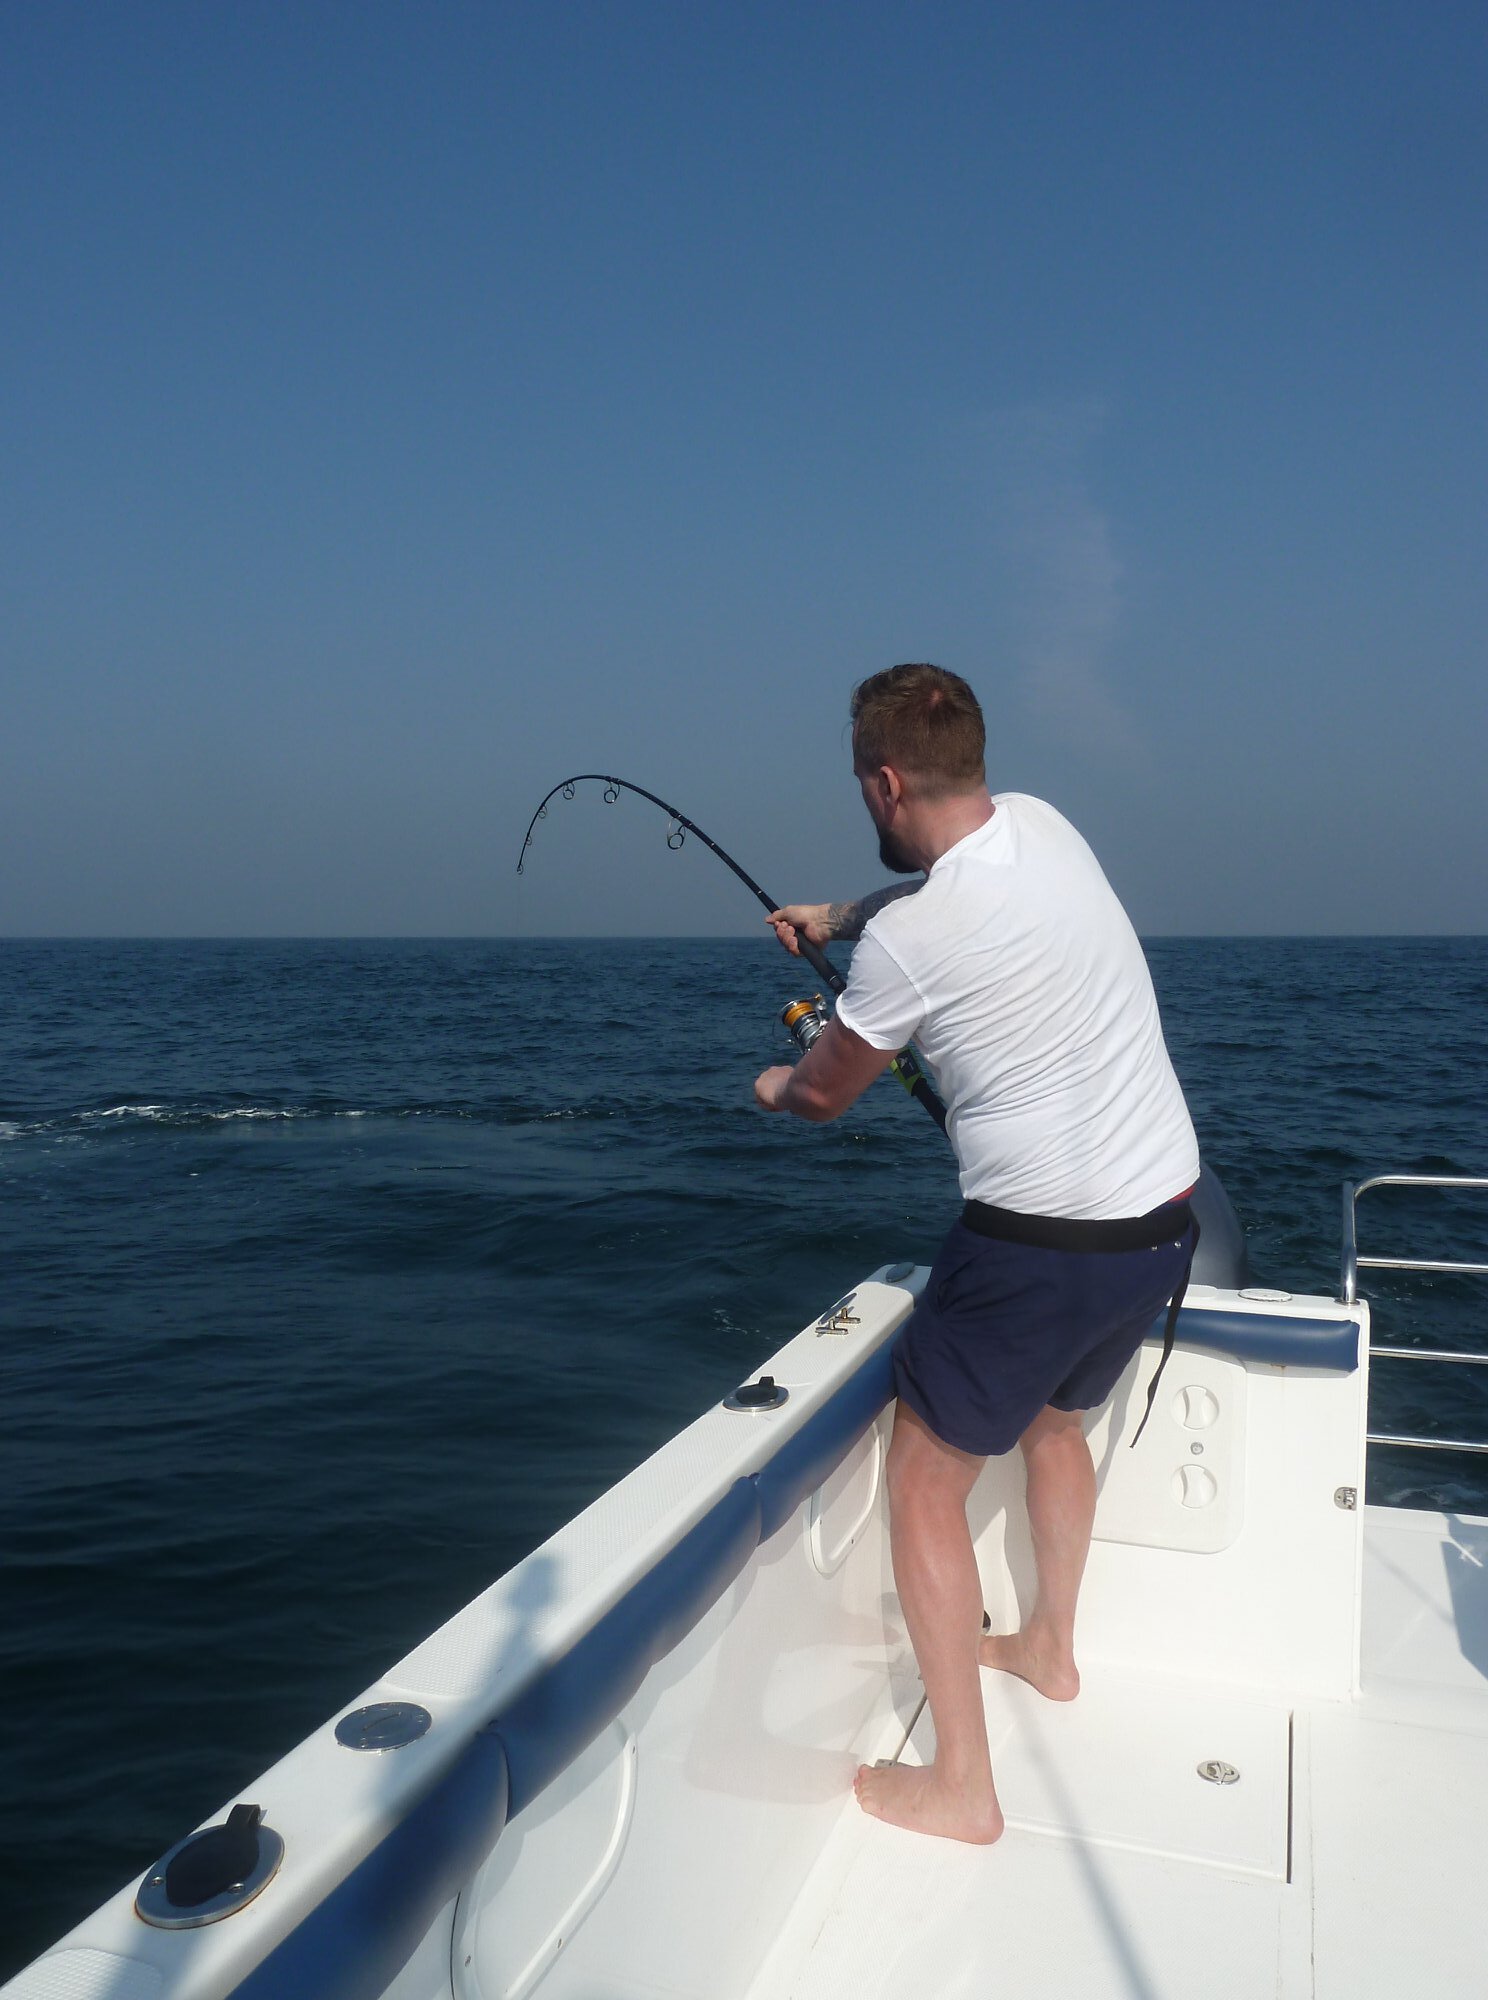 Dream fish come true for Michael — Sport Fishing Lanka